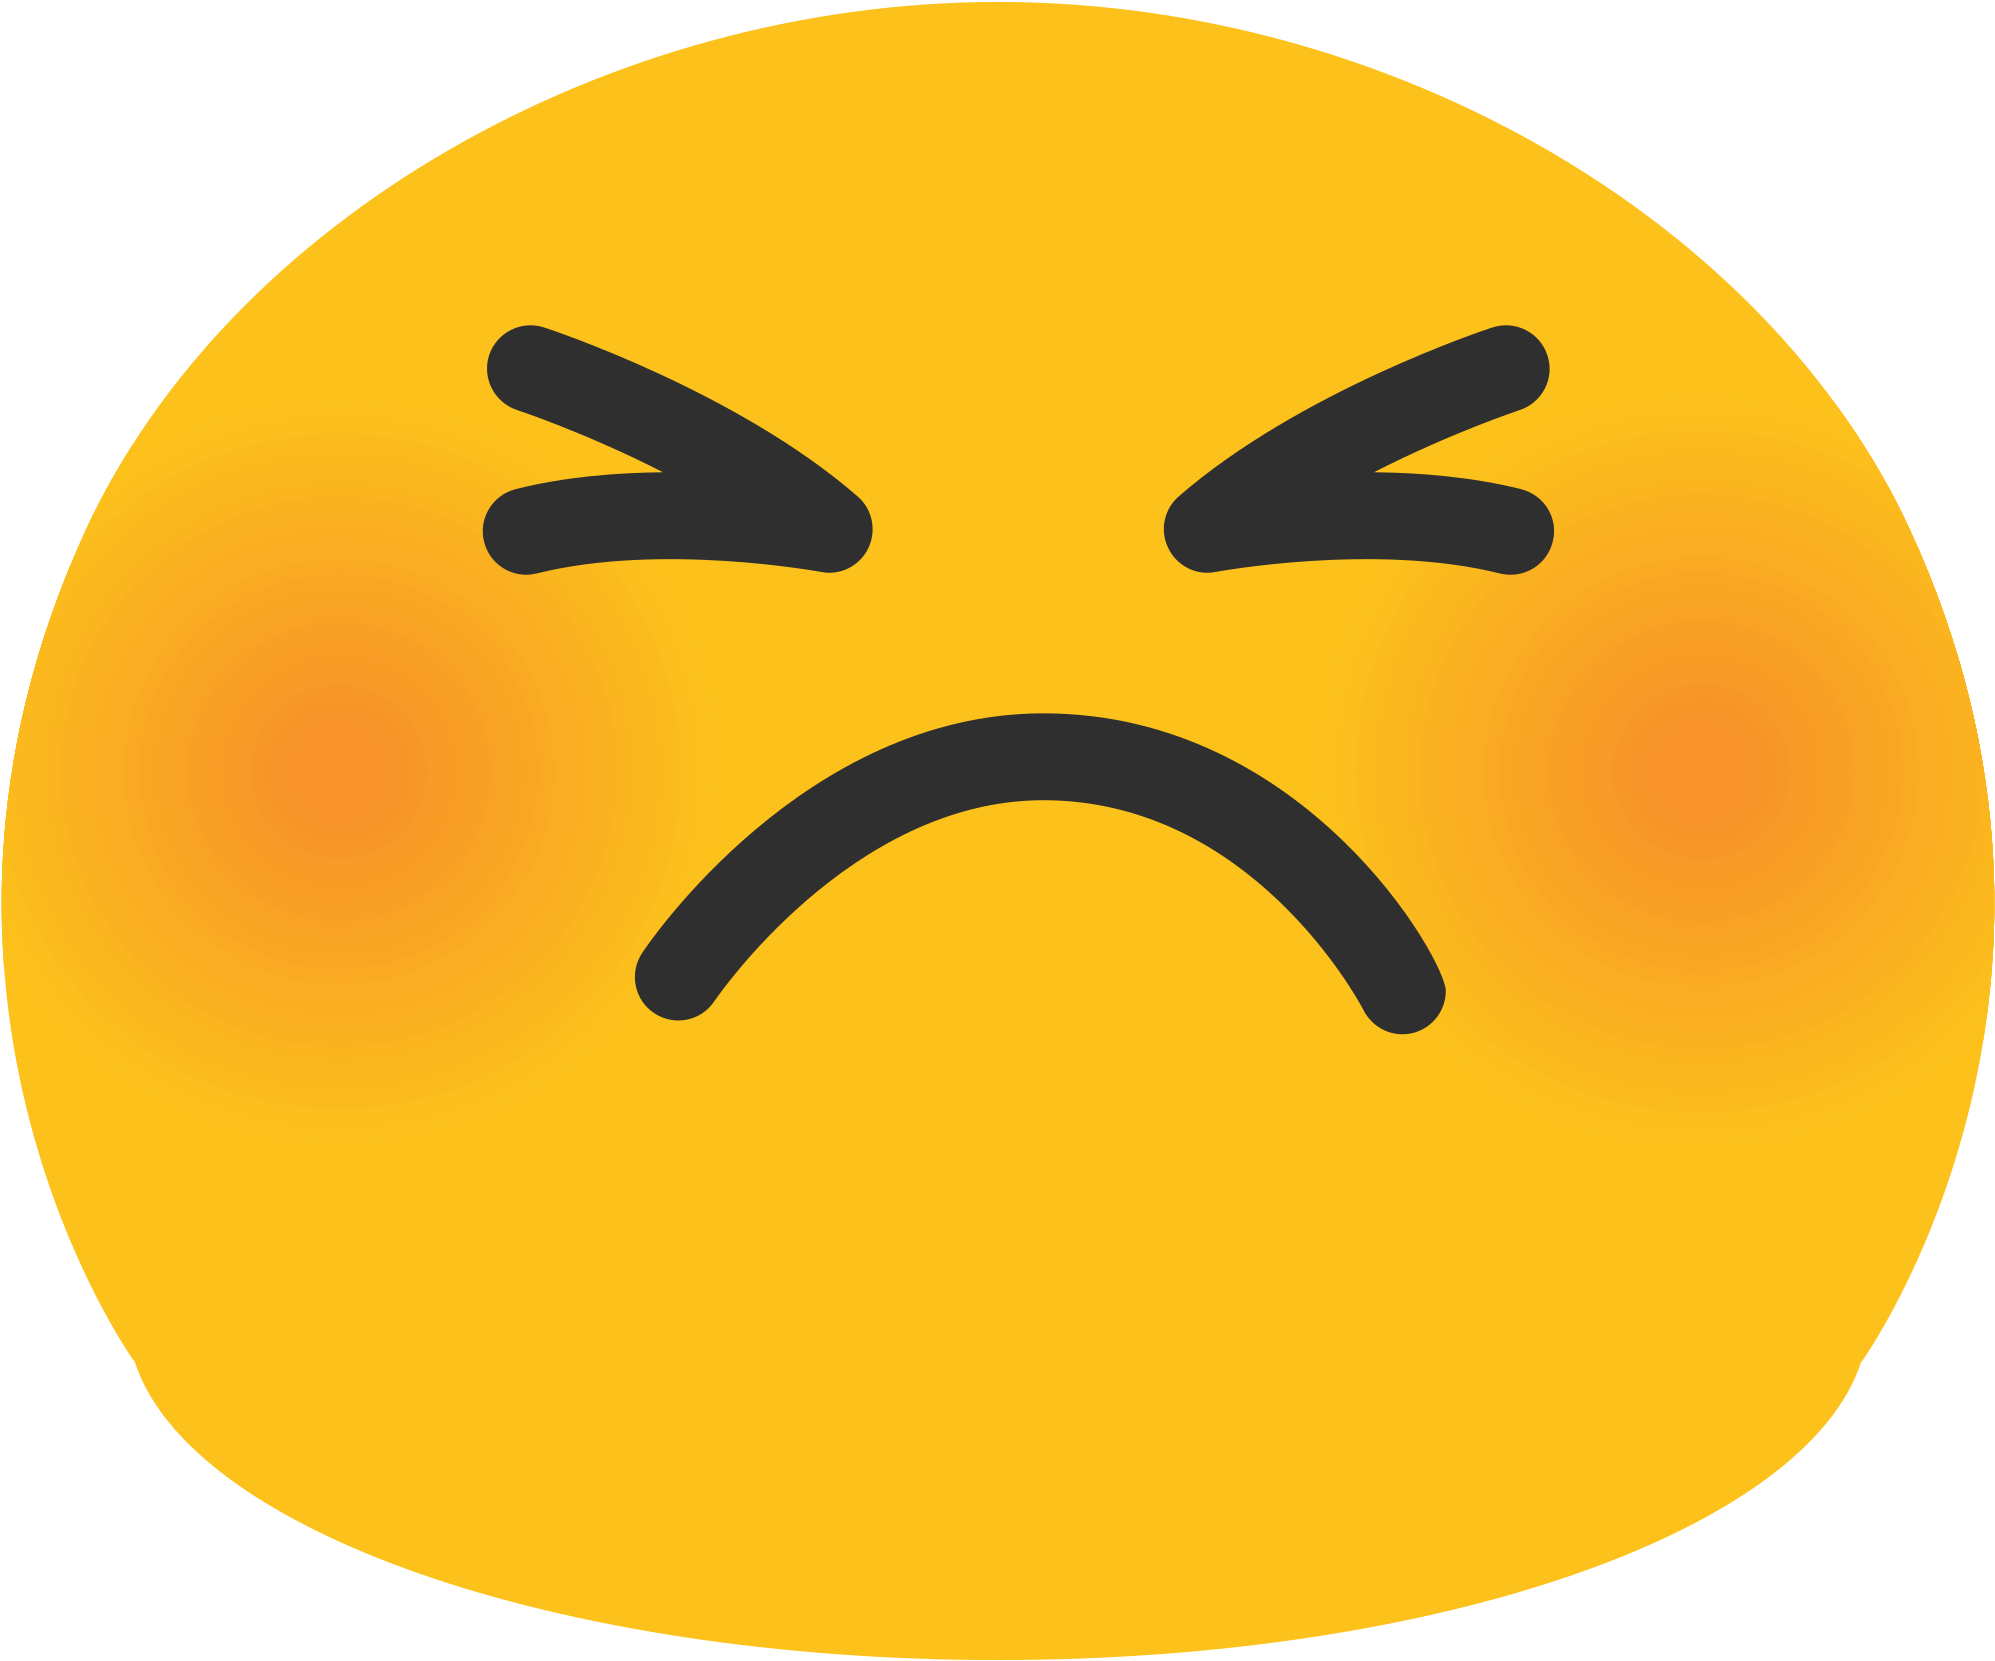 Immagine Trasparente di Emoji del fronte arrabbiato